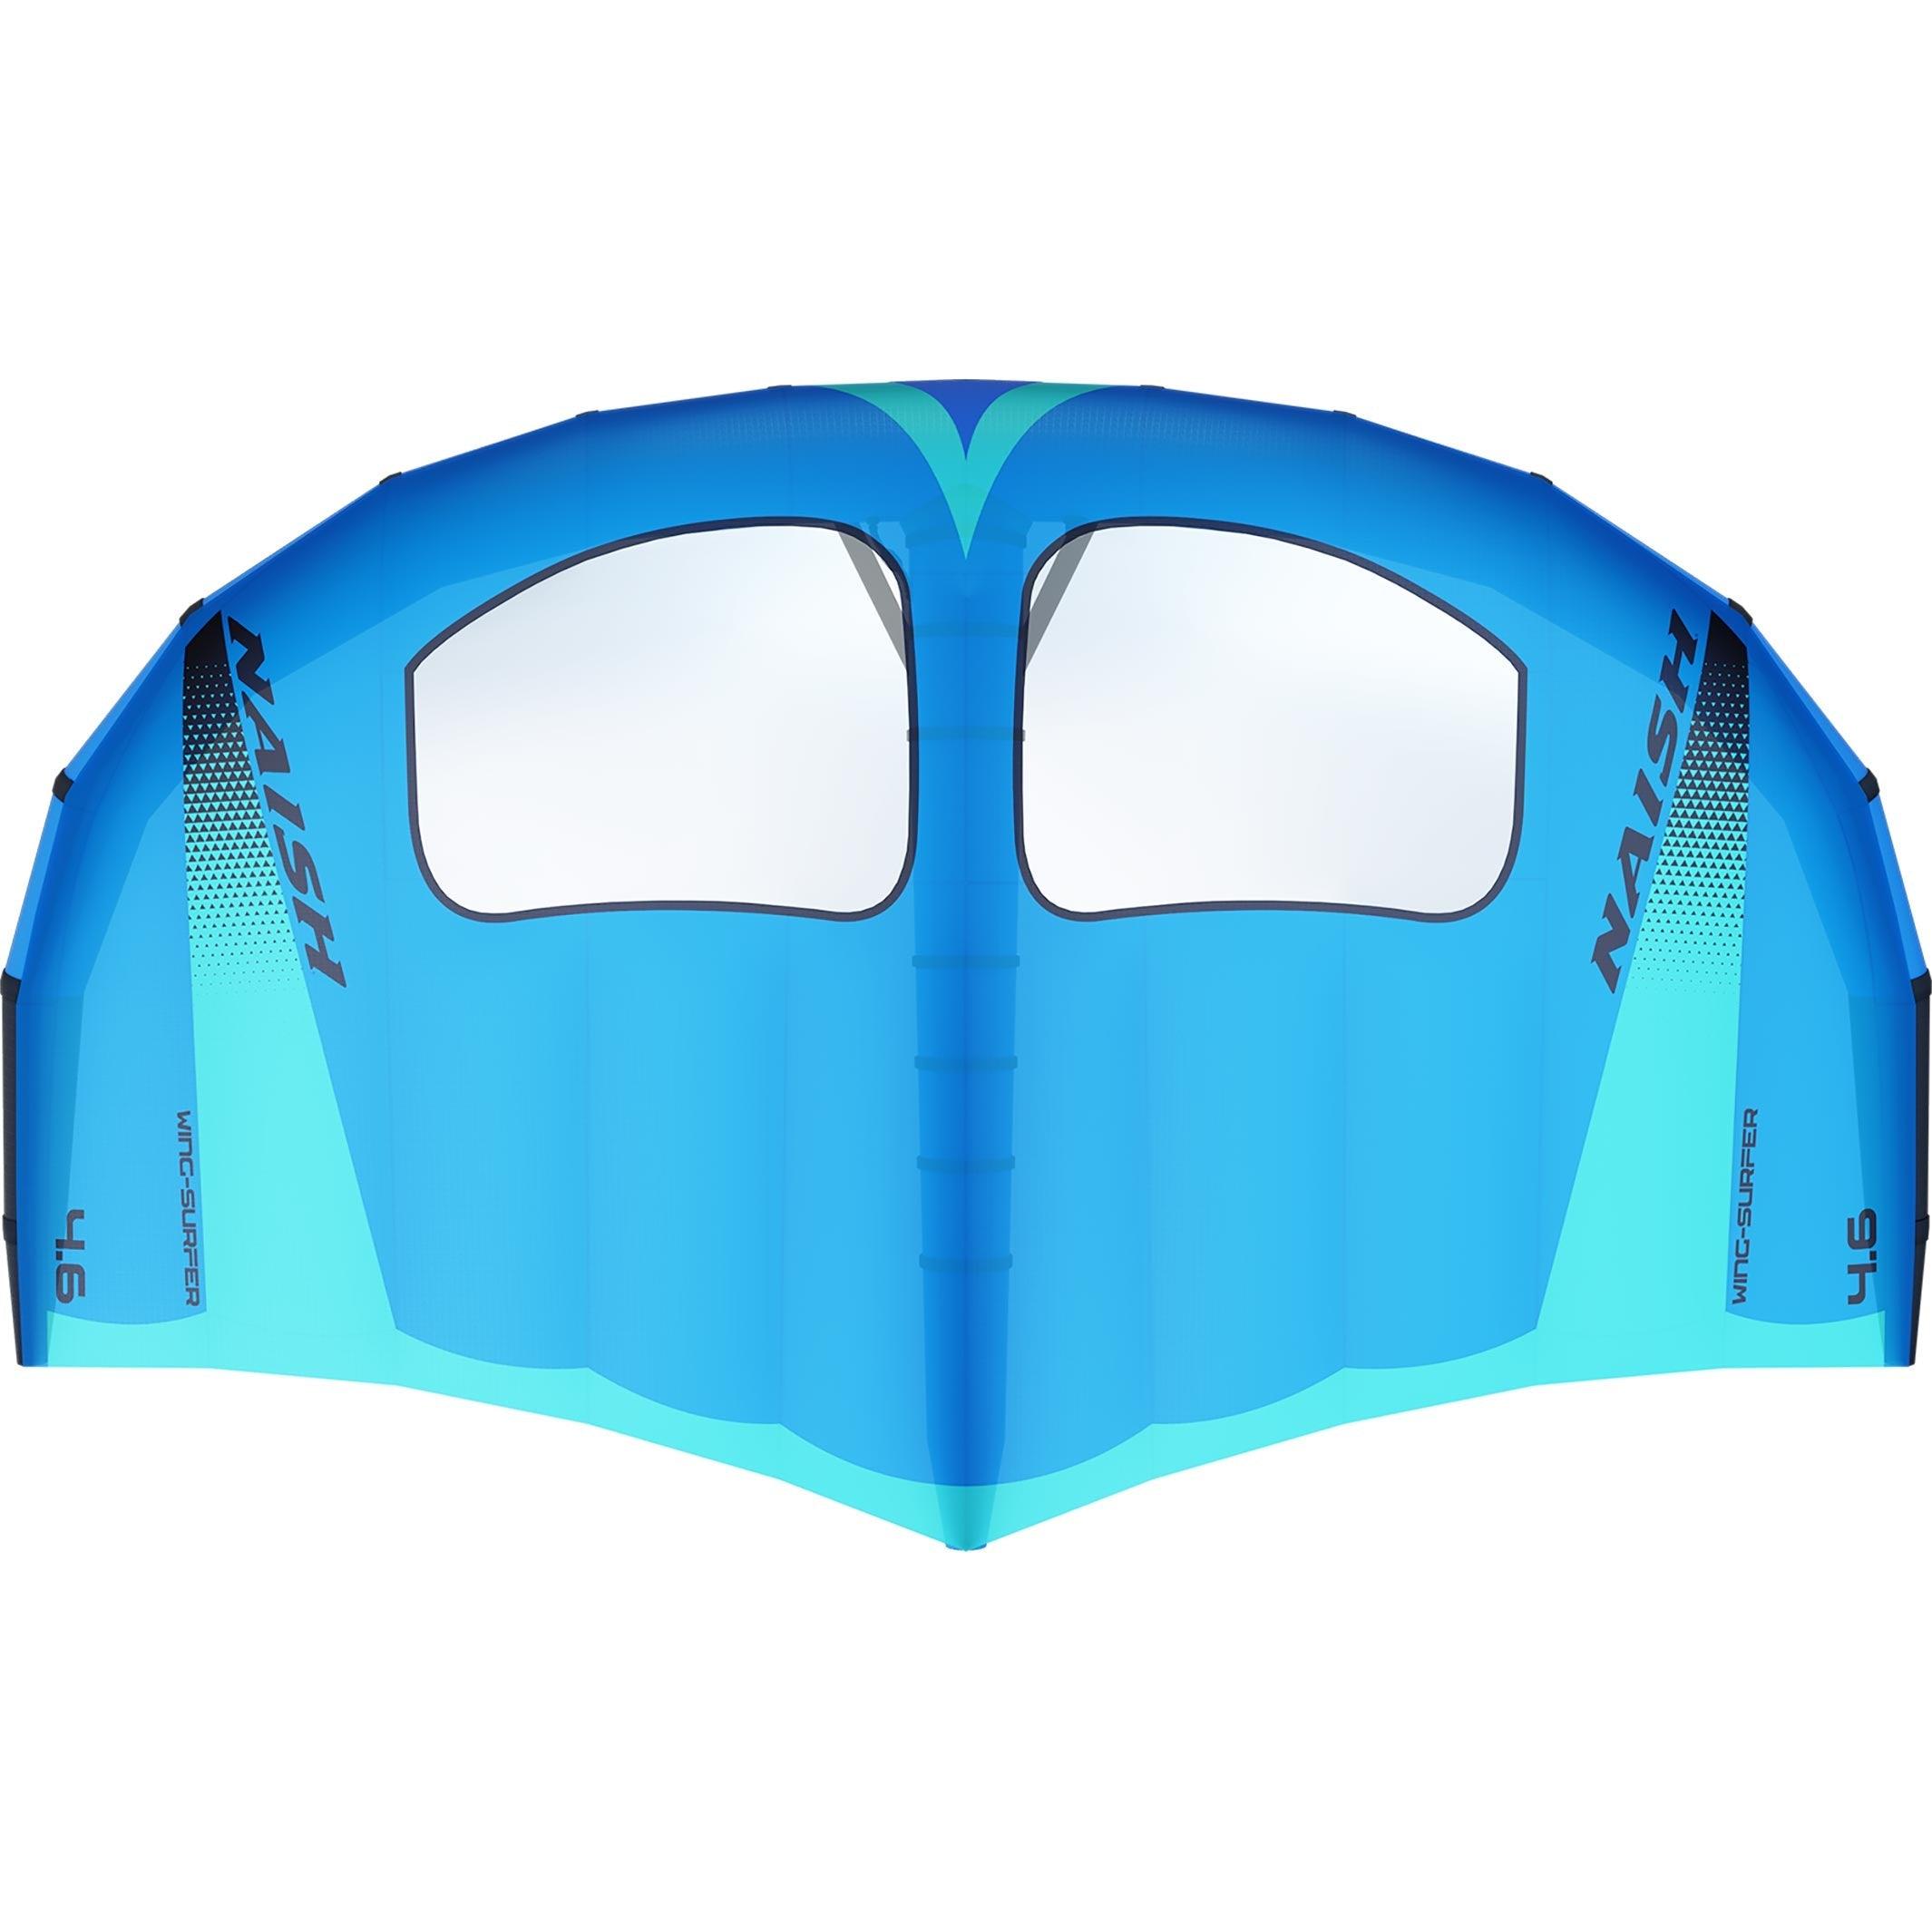 S26 Wing-Surfer - Naish.com